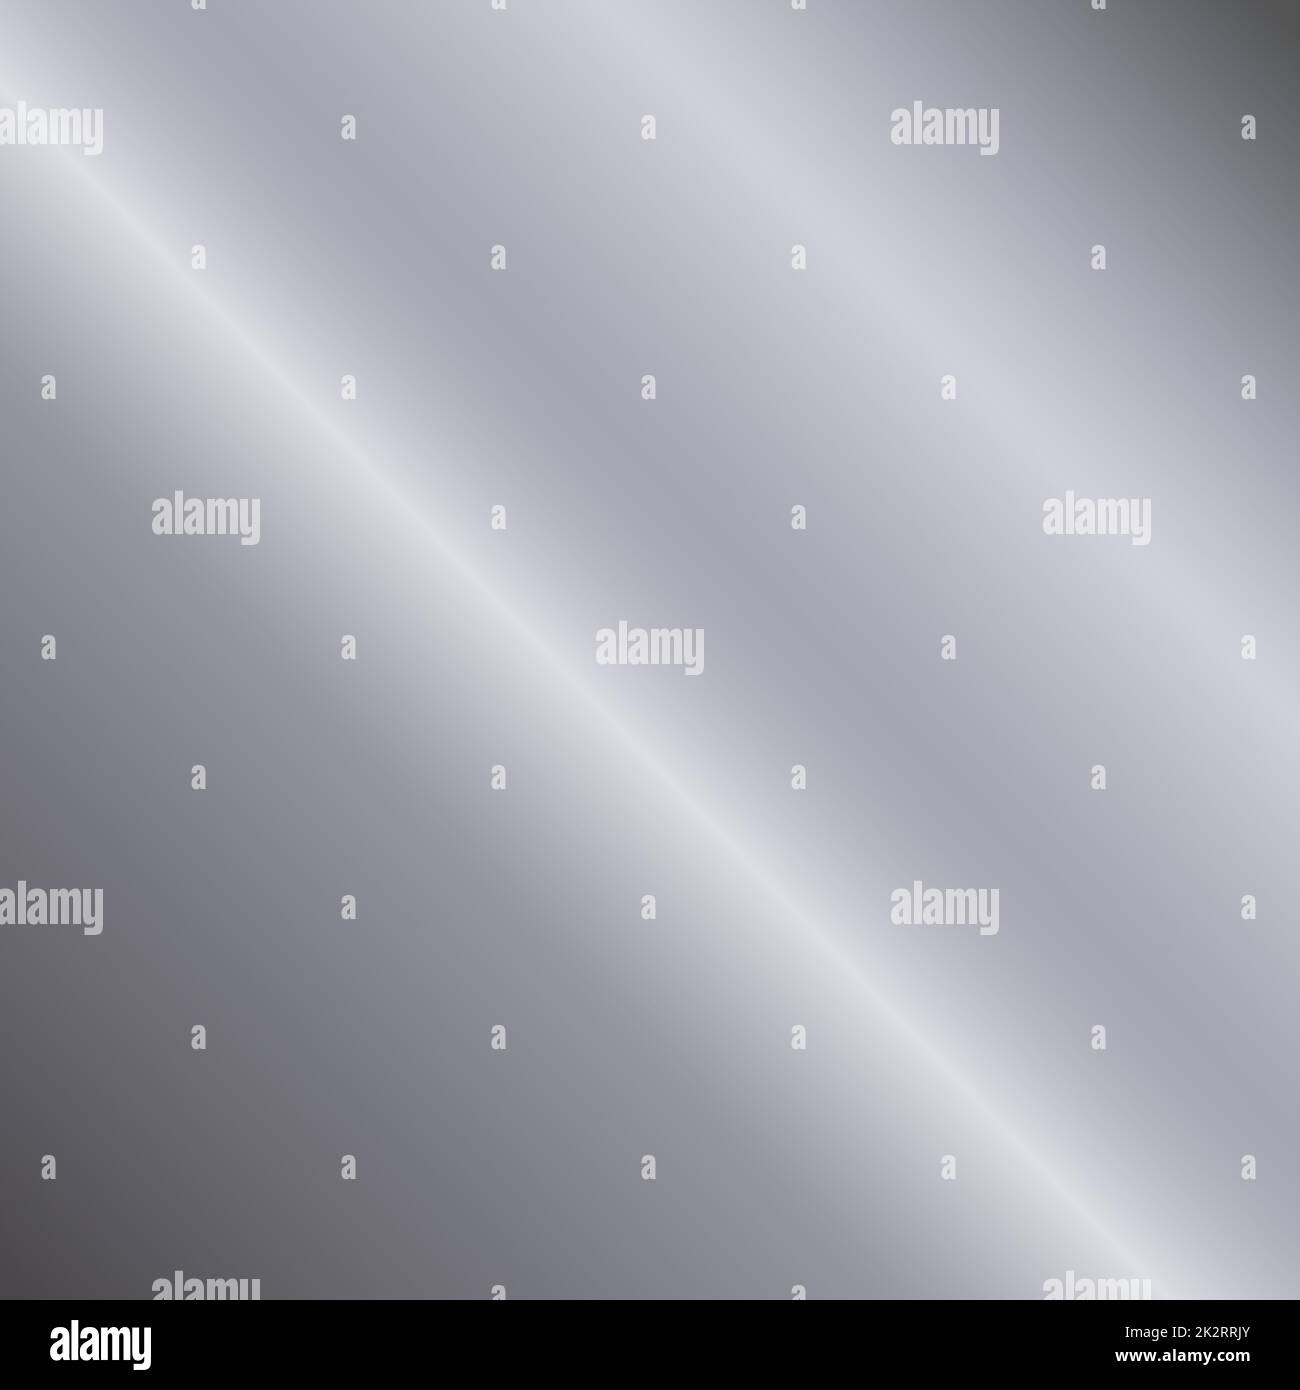 Silberne Textur, Aluminium-Webhintergrund-Vorlage - Vektor Stockfoto